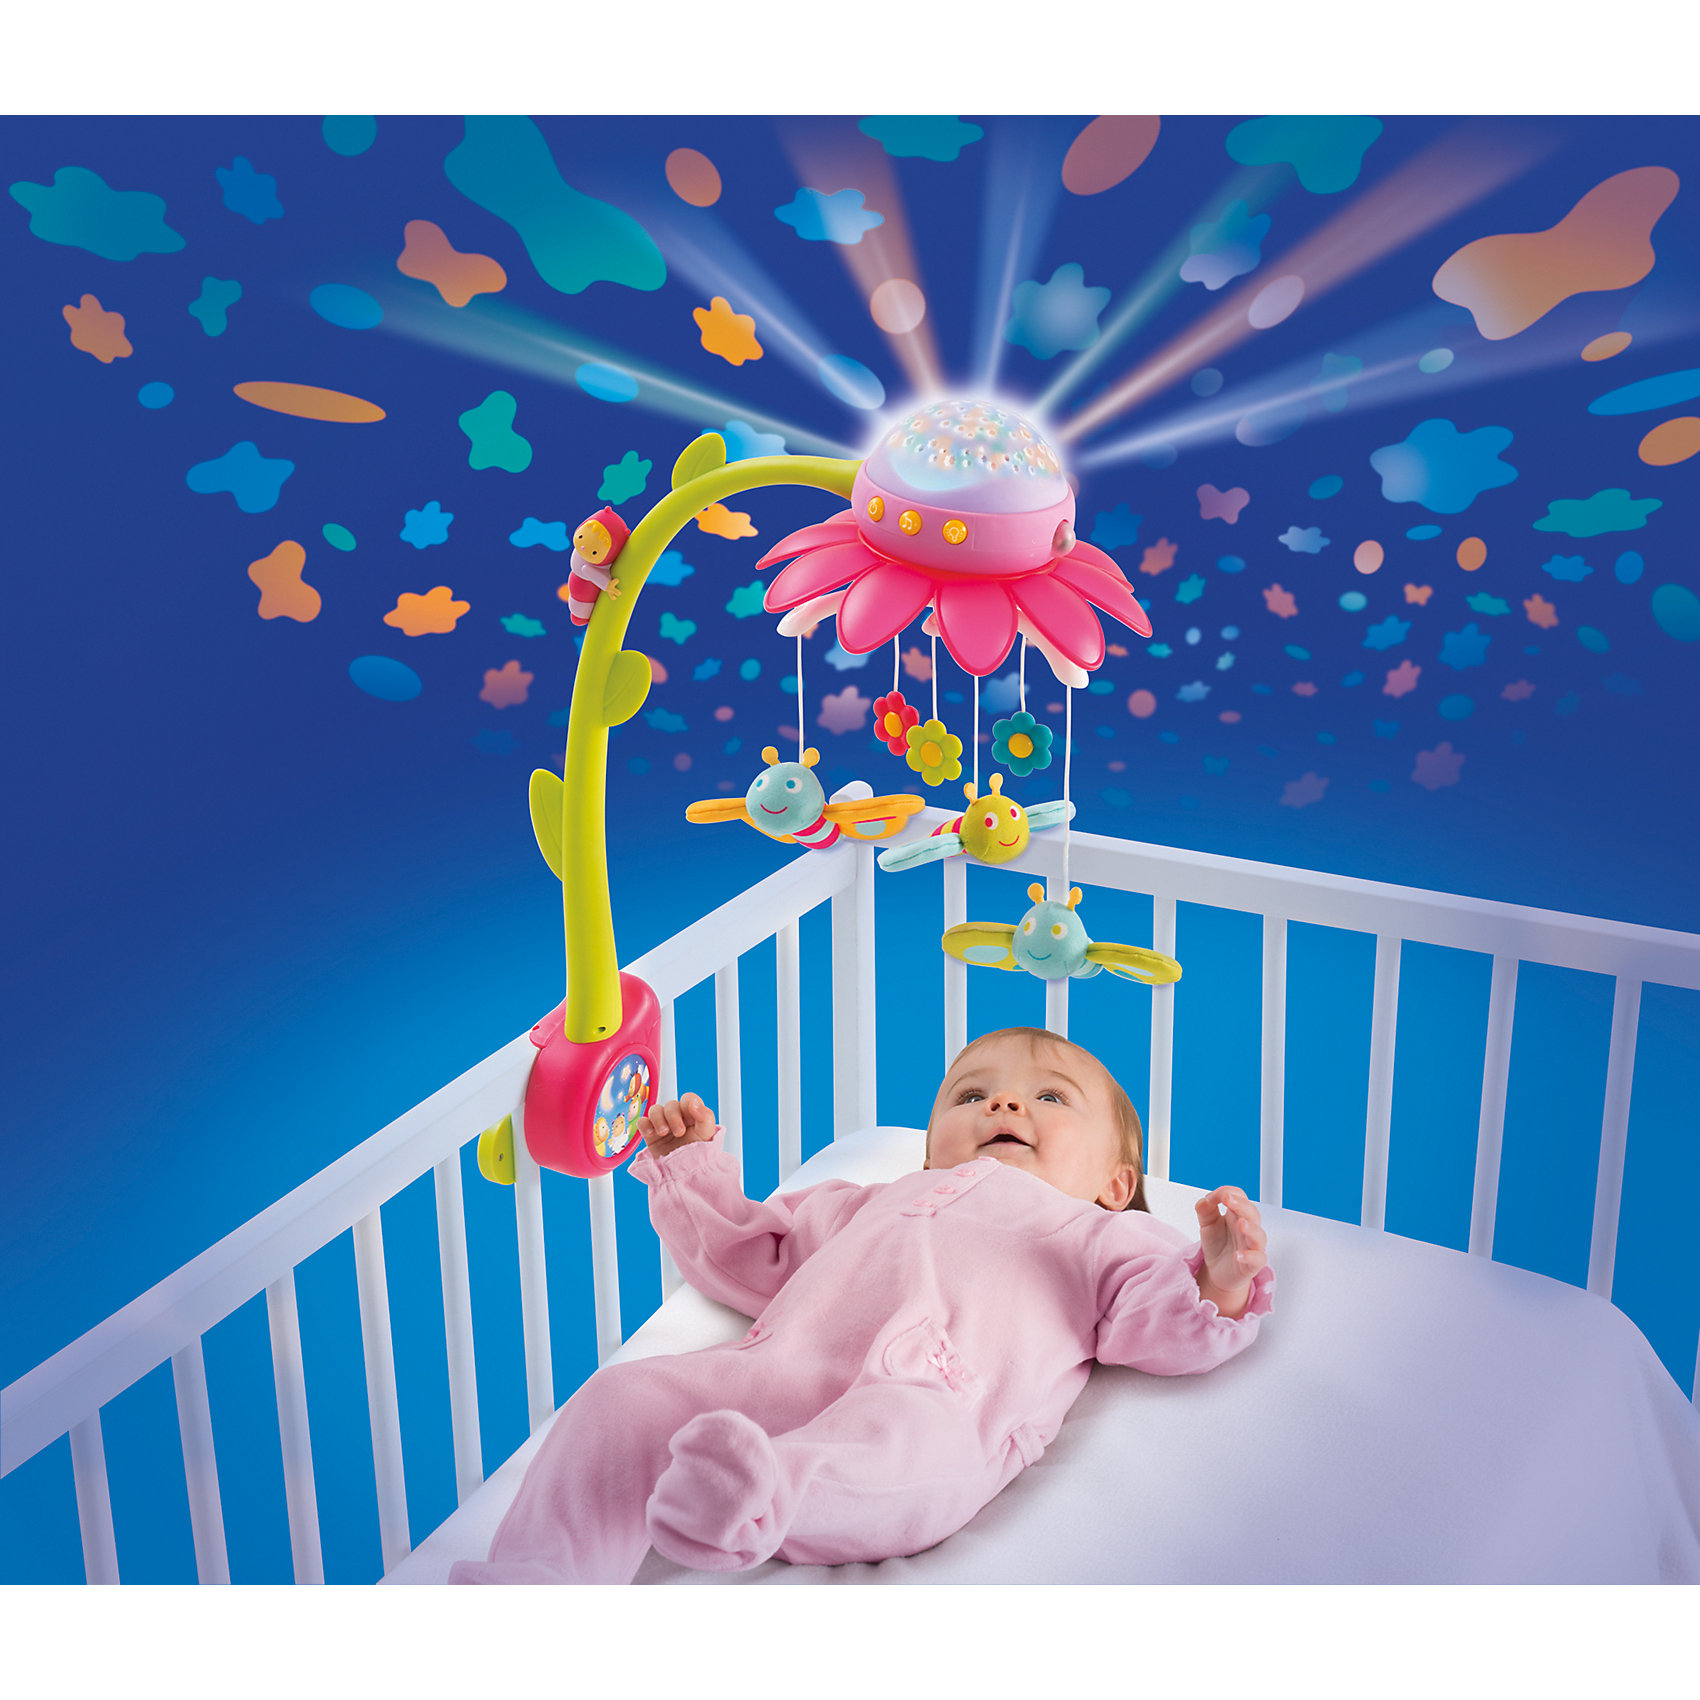 Включи звуки мобиля. Электронный мобиль Cotoons цветок 211374. Мобили для новорожденных в кроватку. Музыкальная игрушка над кроваткой. Музыкальный мобиль в кроватку для новорожденных.